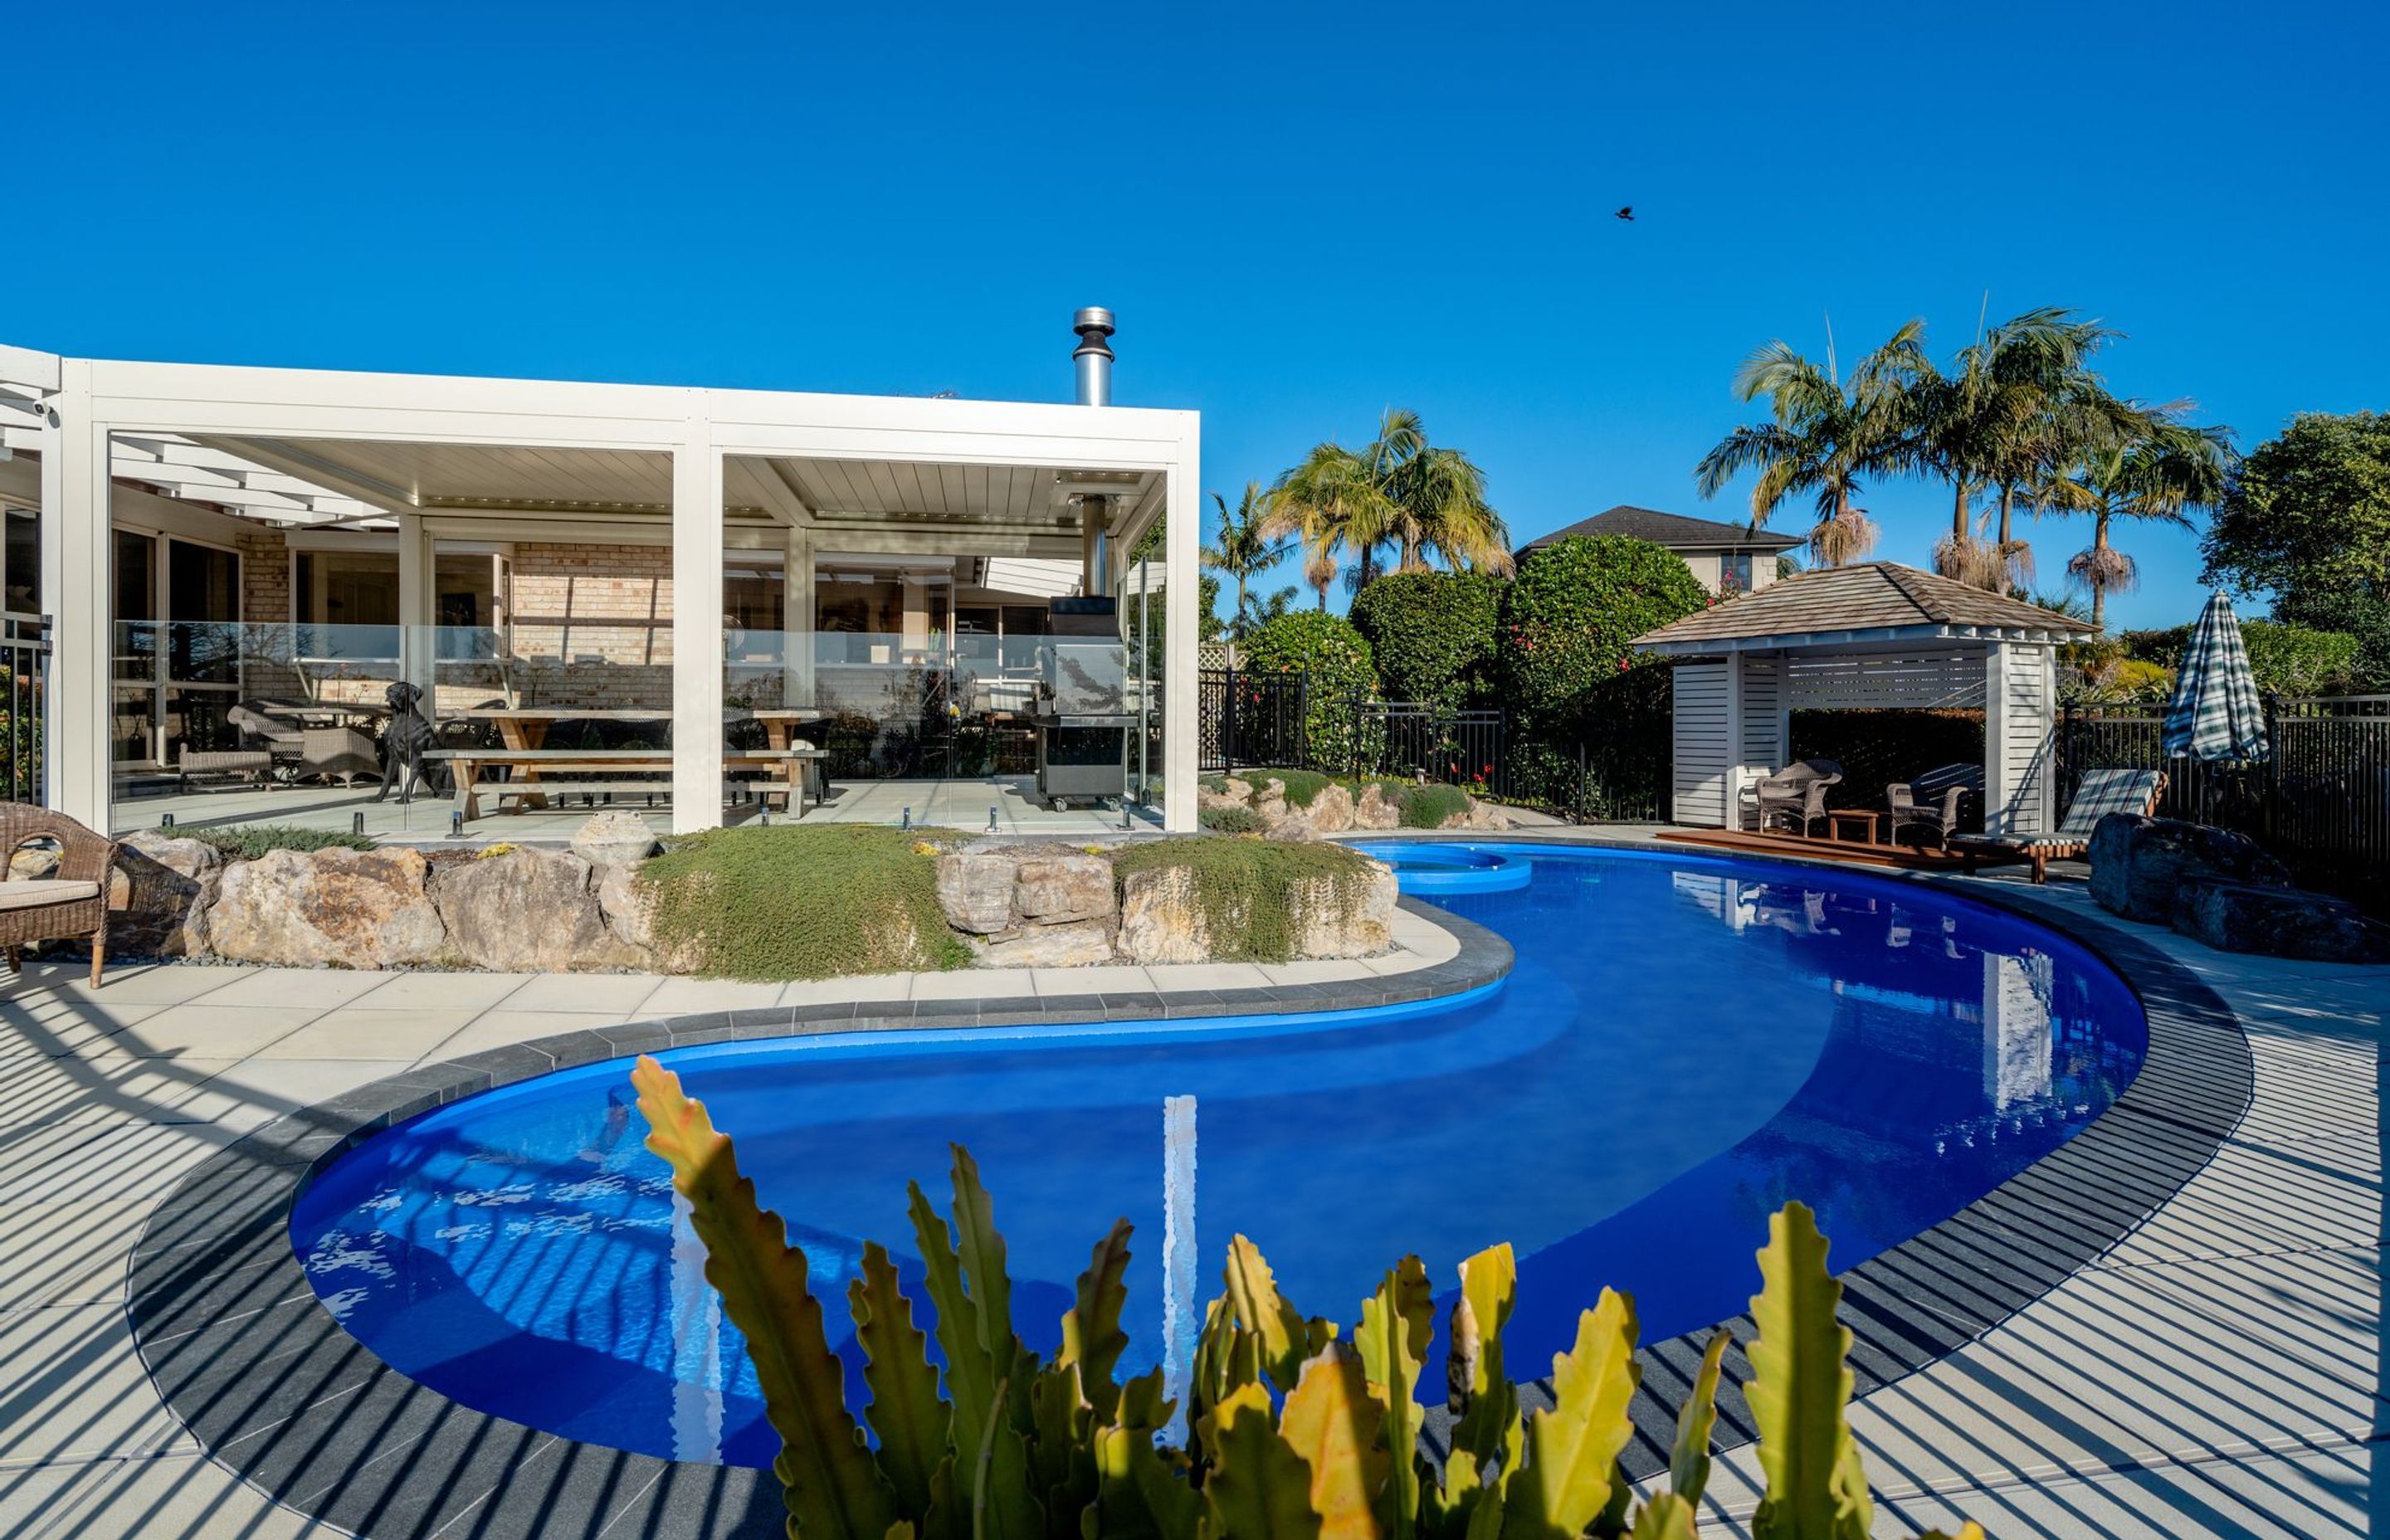 Resort Dreams: Platinum Pool of the Year 2022